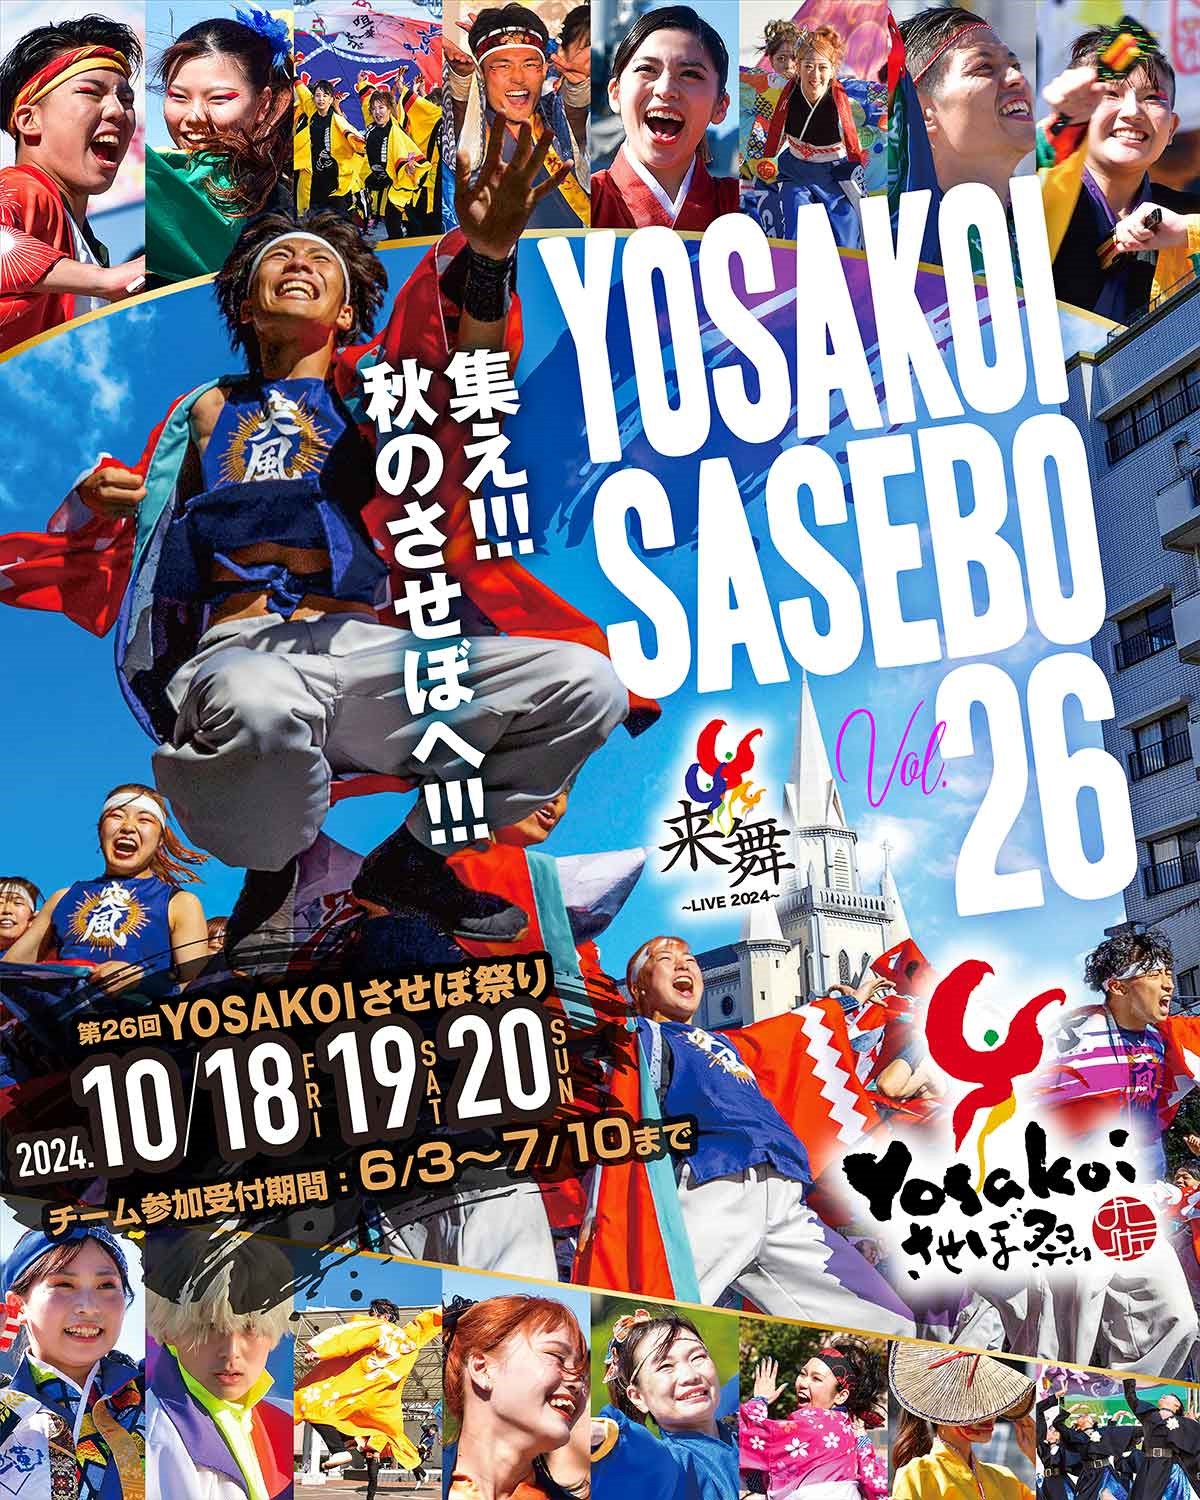 第26回YOSAKOIさせぼ祭り開催10月18・19・20日